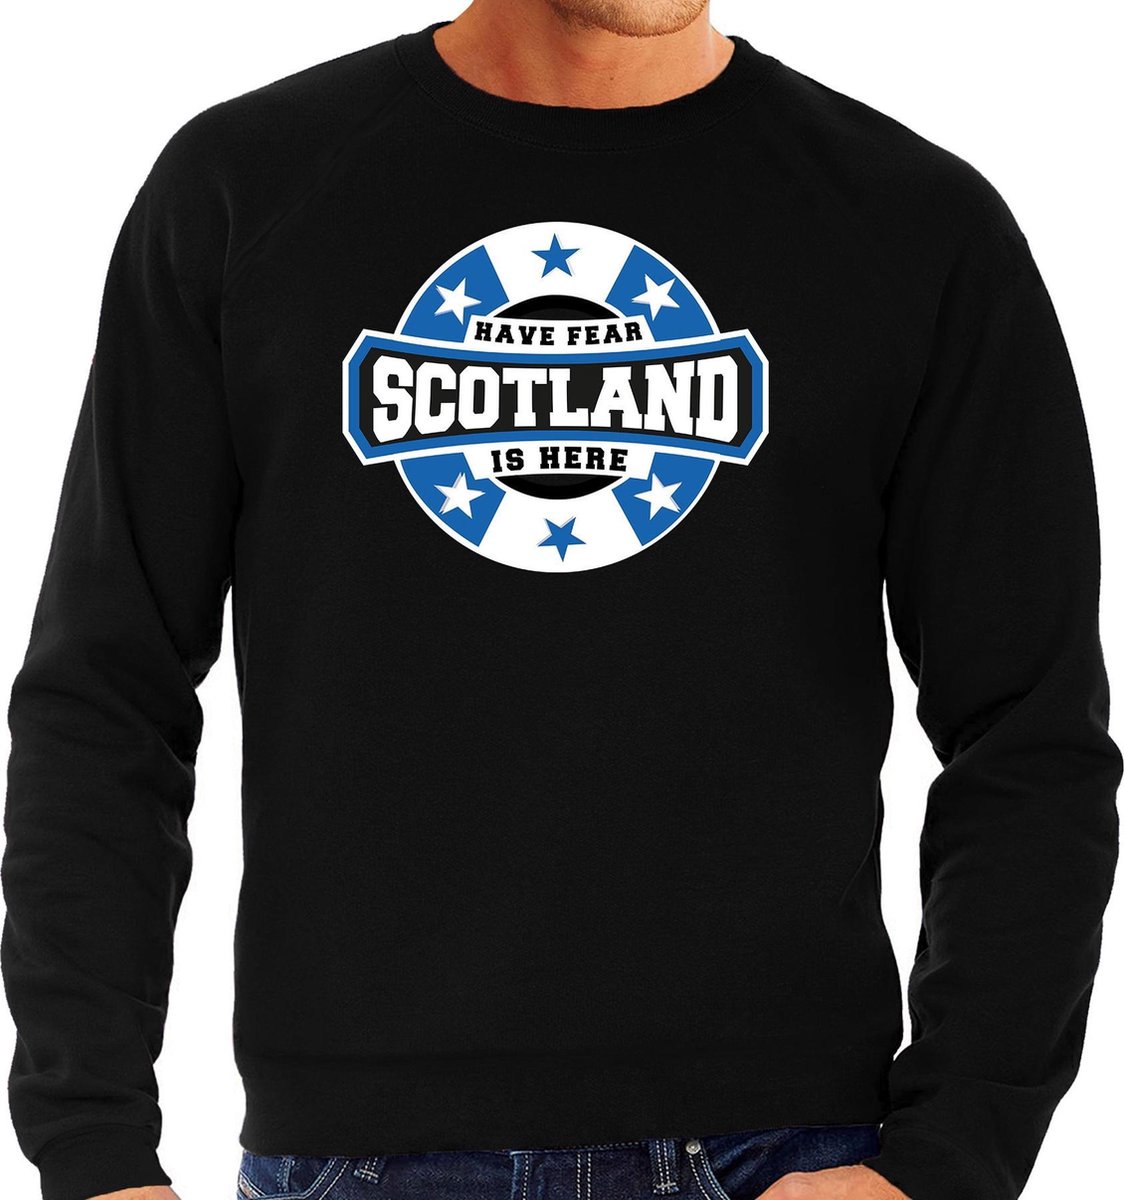 Have fear Scotland is here sweater met sterren embleem in de kleuren van de Schotse vlag - zwart - heren - Schotland supporter / Schots elftal fan trui / EK / WK / kleding XL